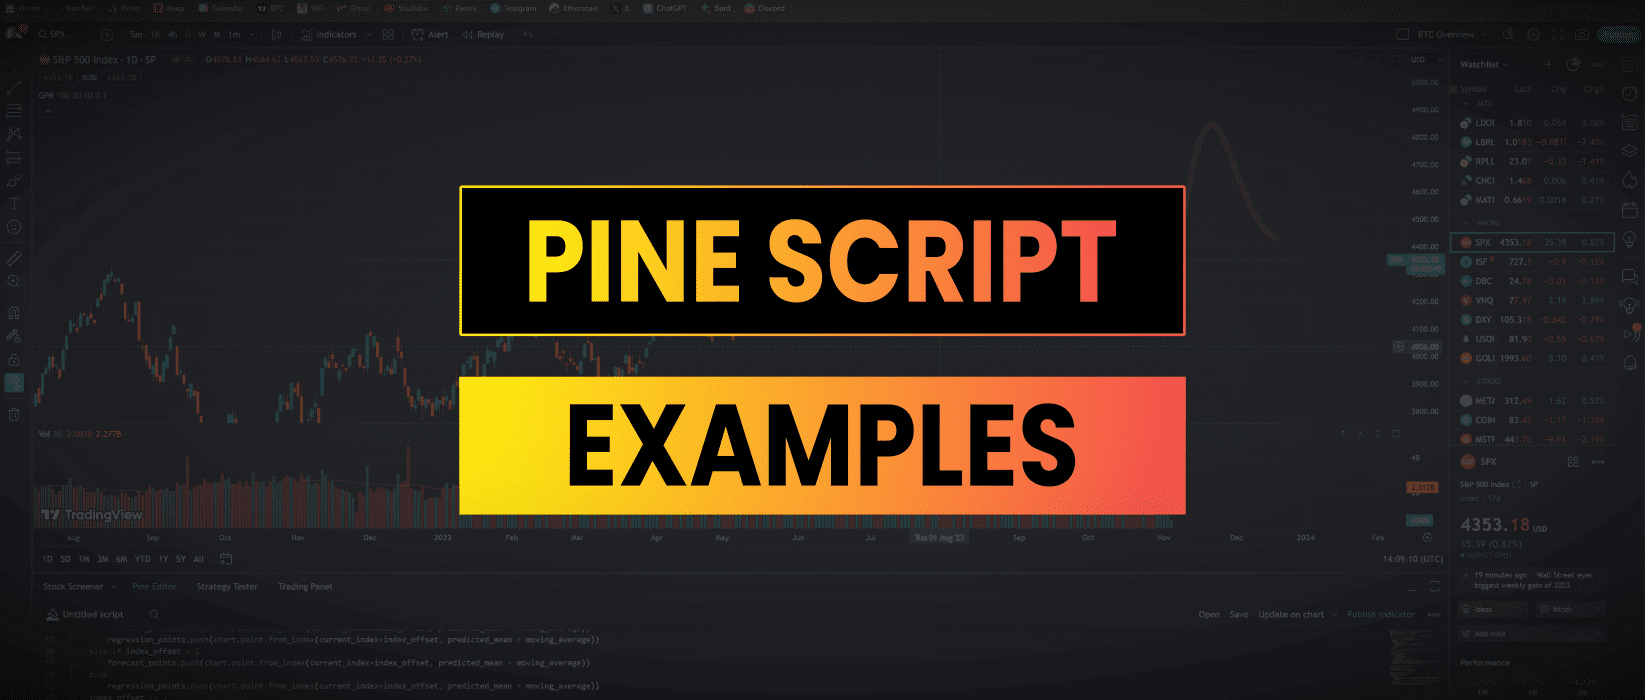 pinescript examples